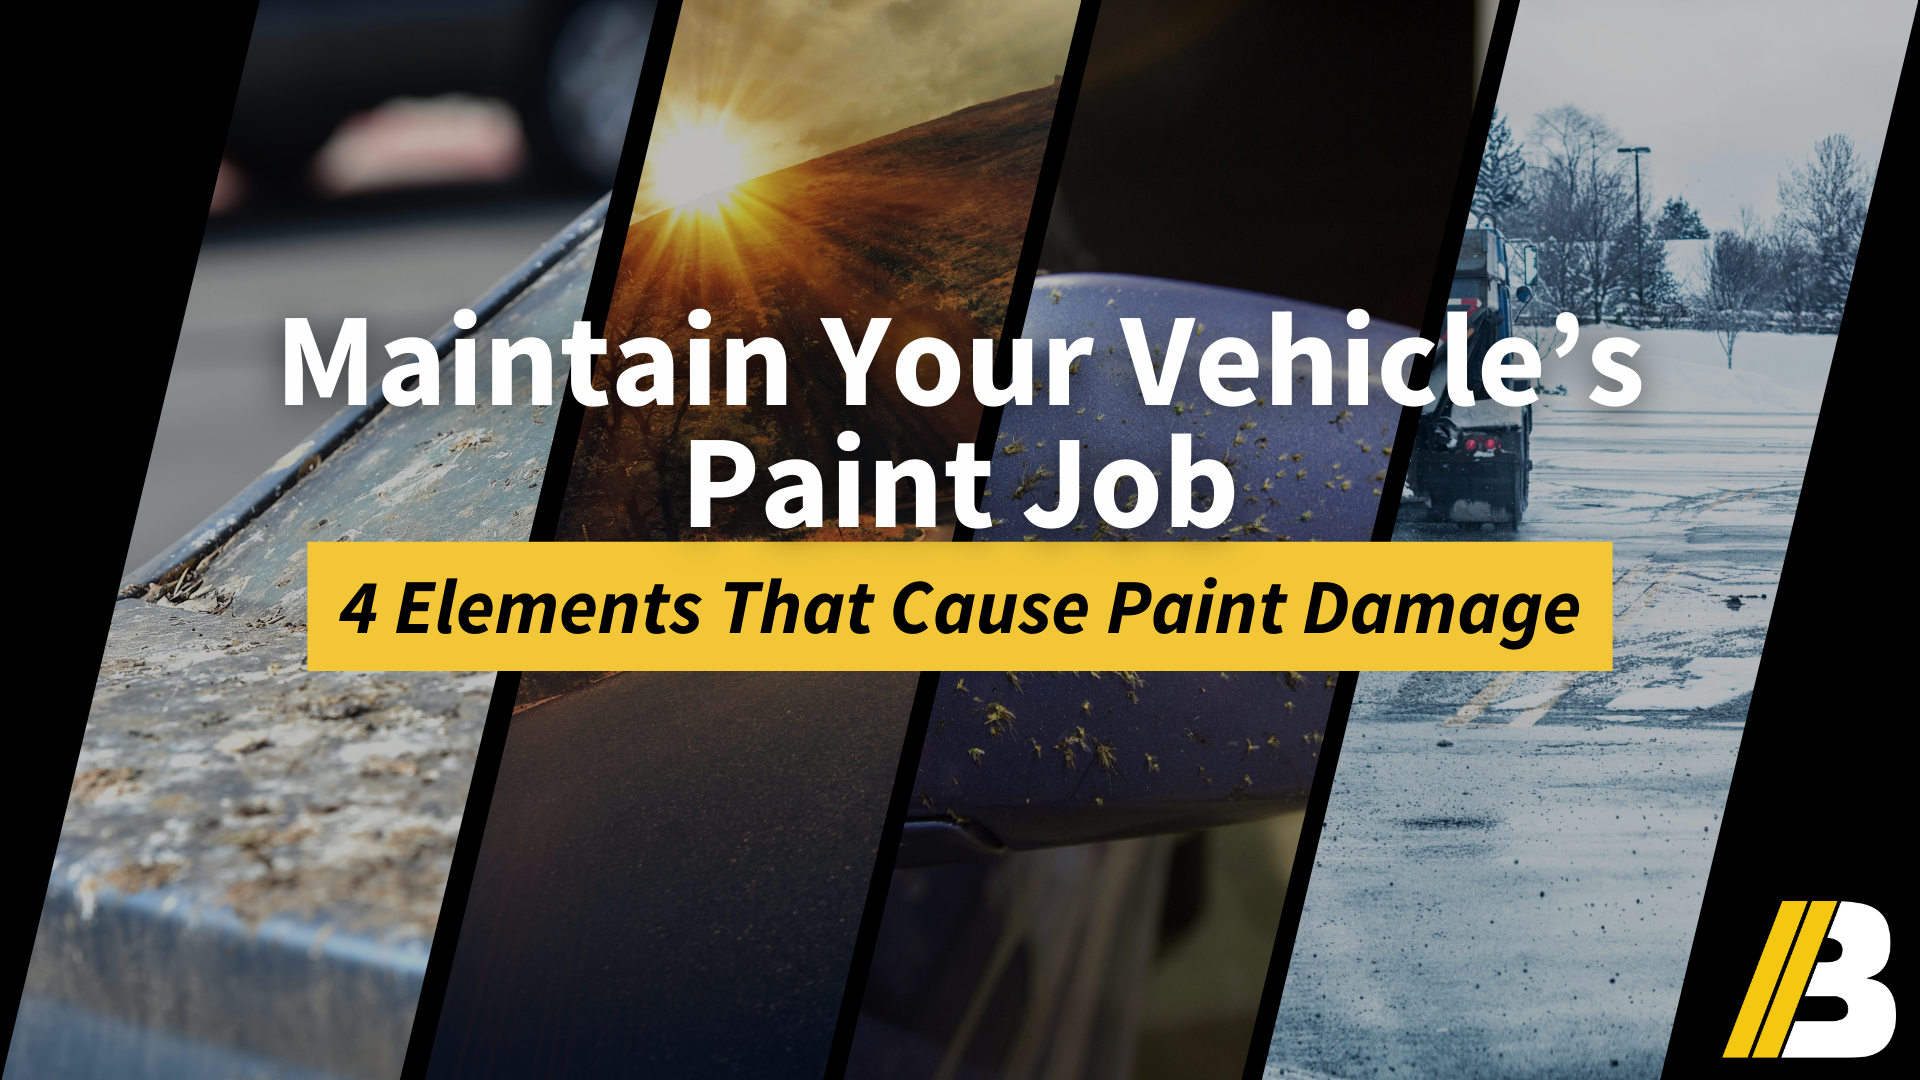 4 Common Elements That Damage Your Car's Paint